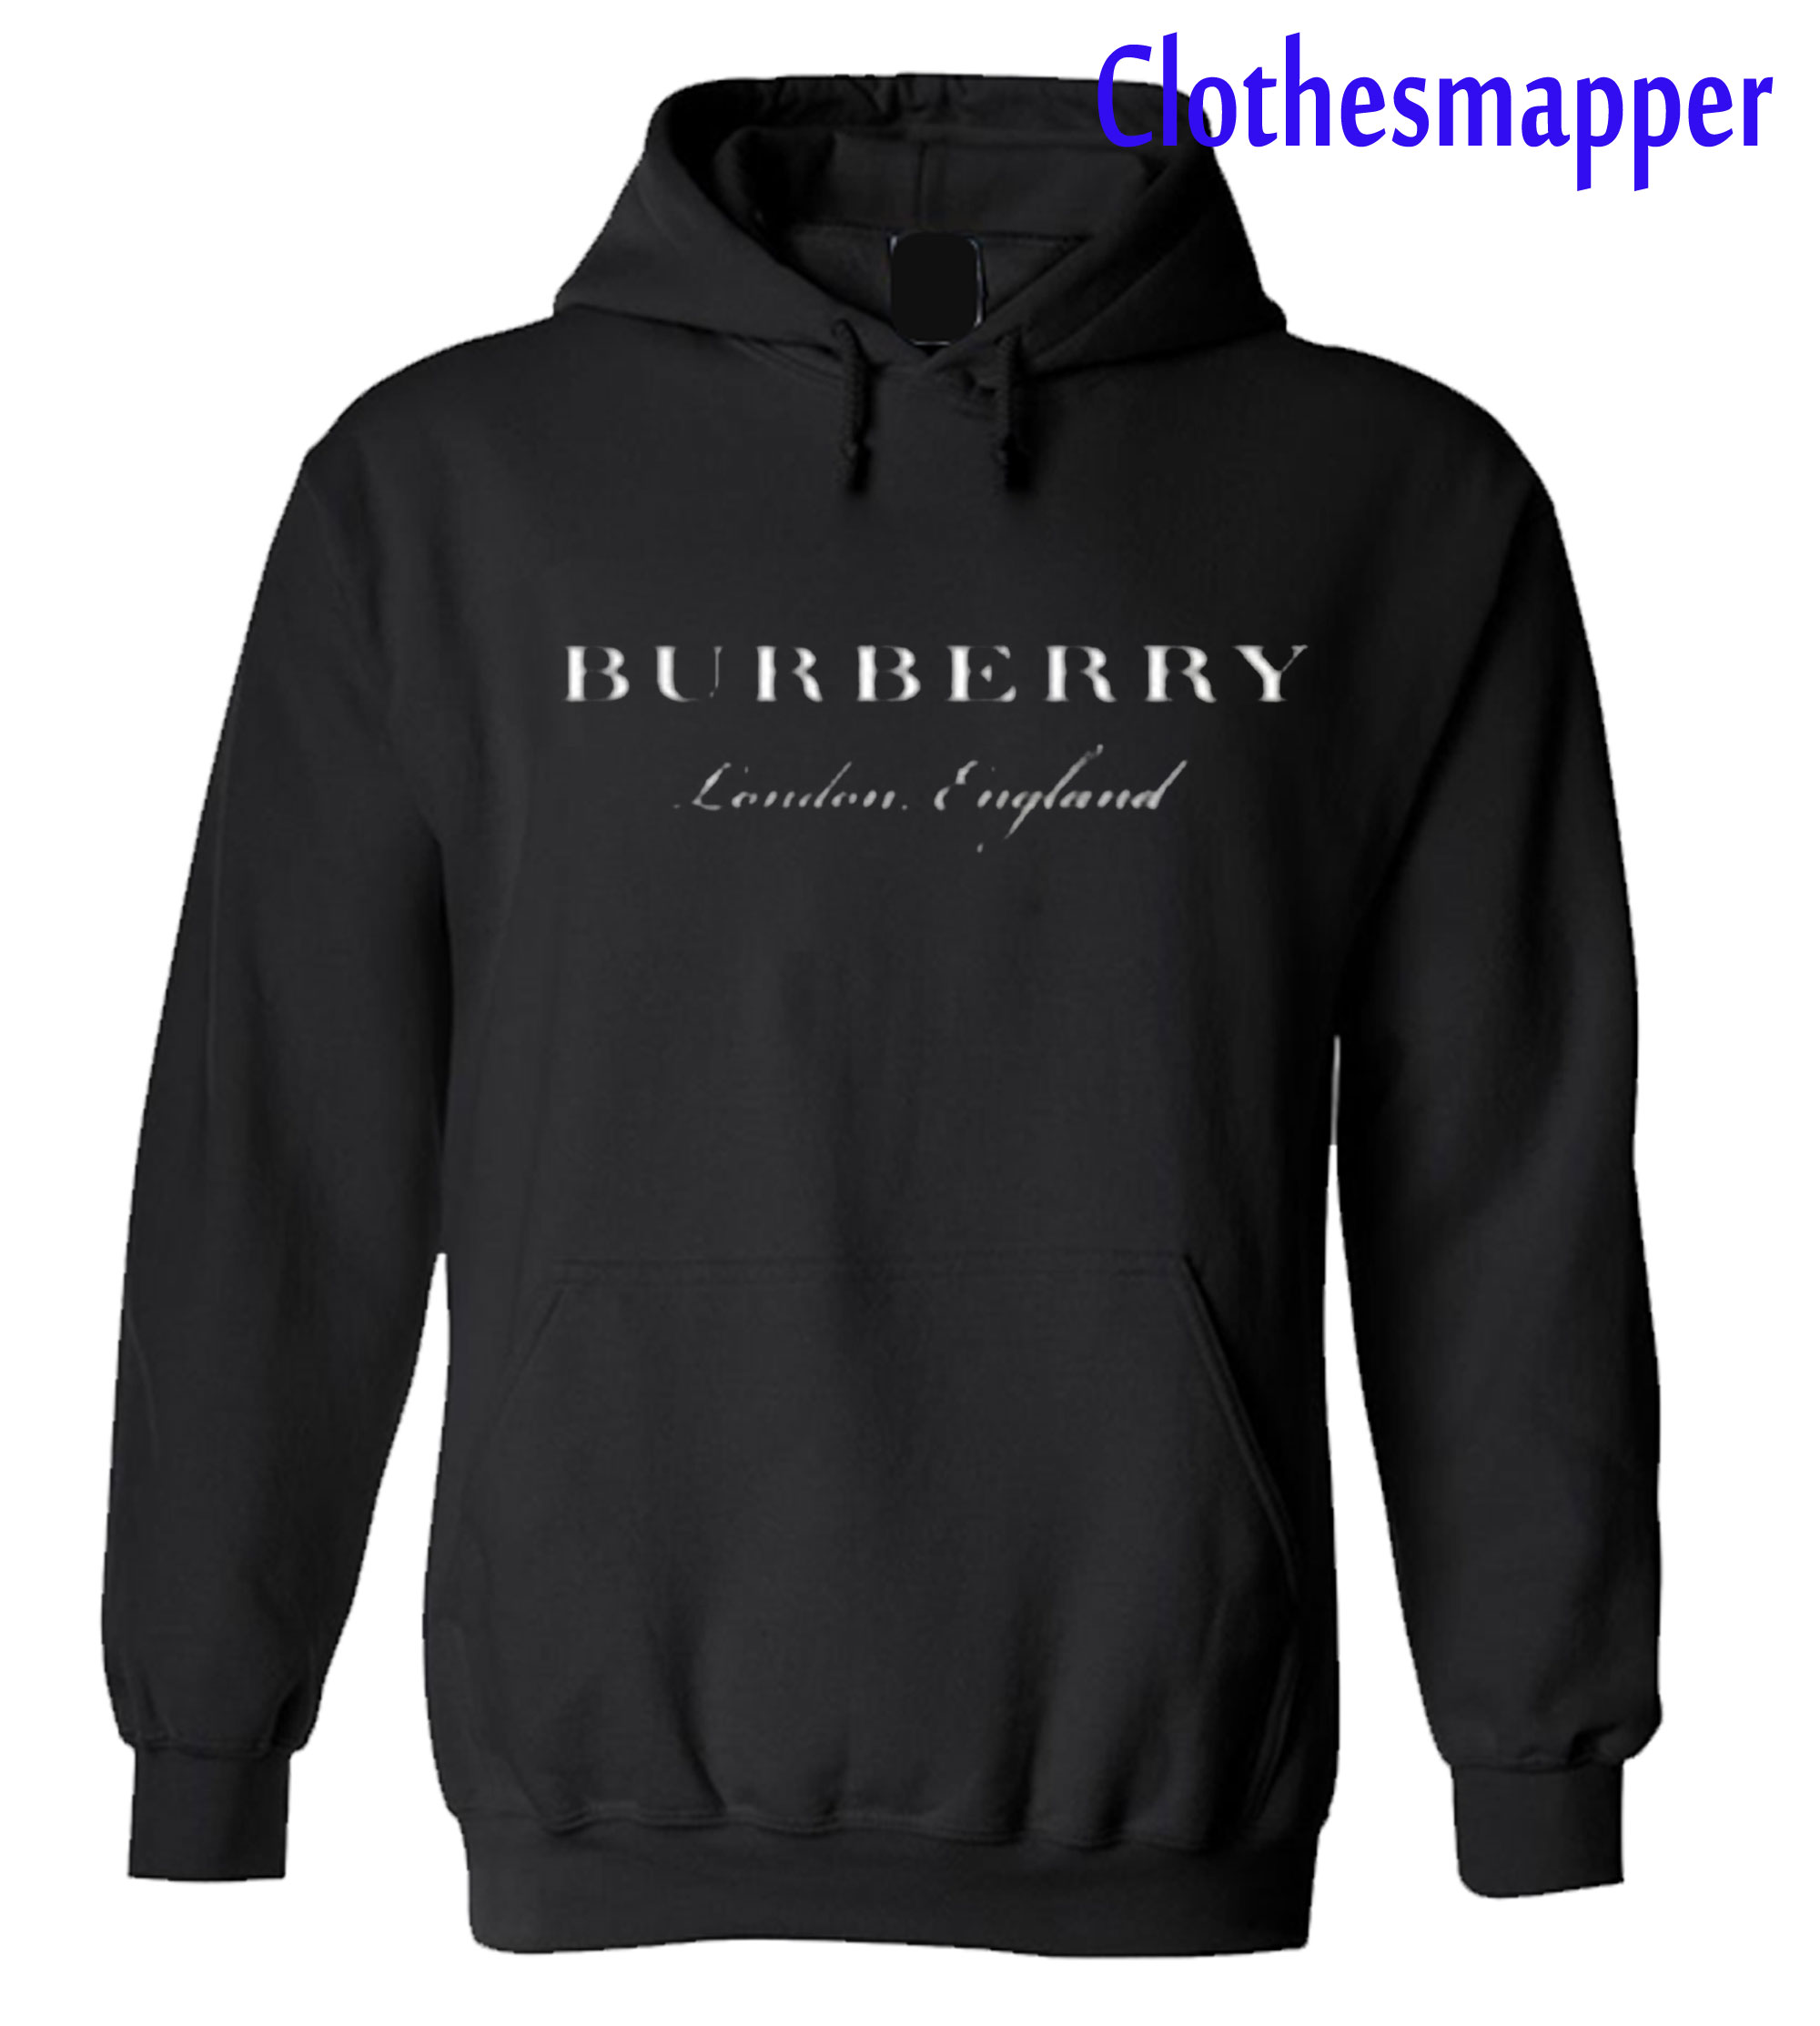 burberry england website